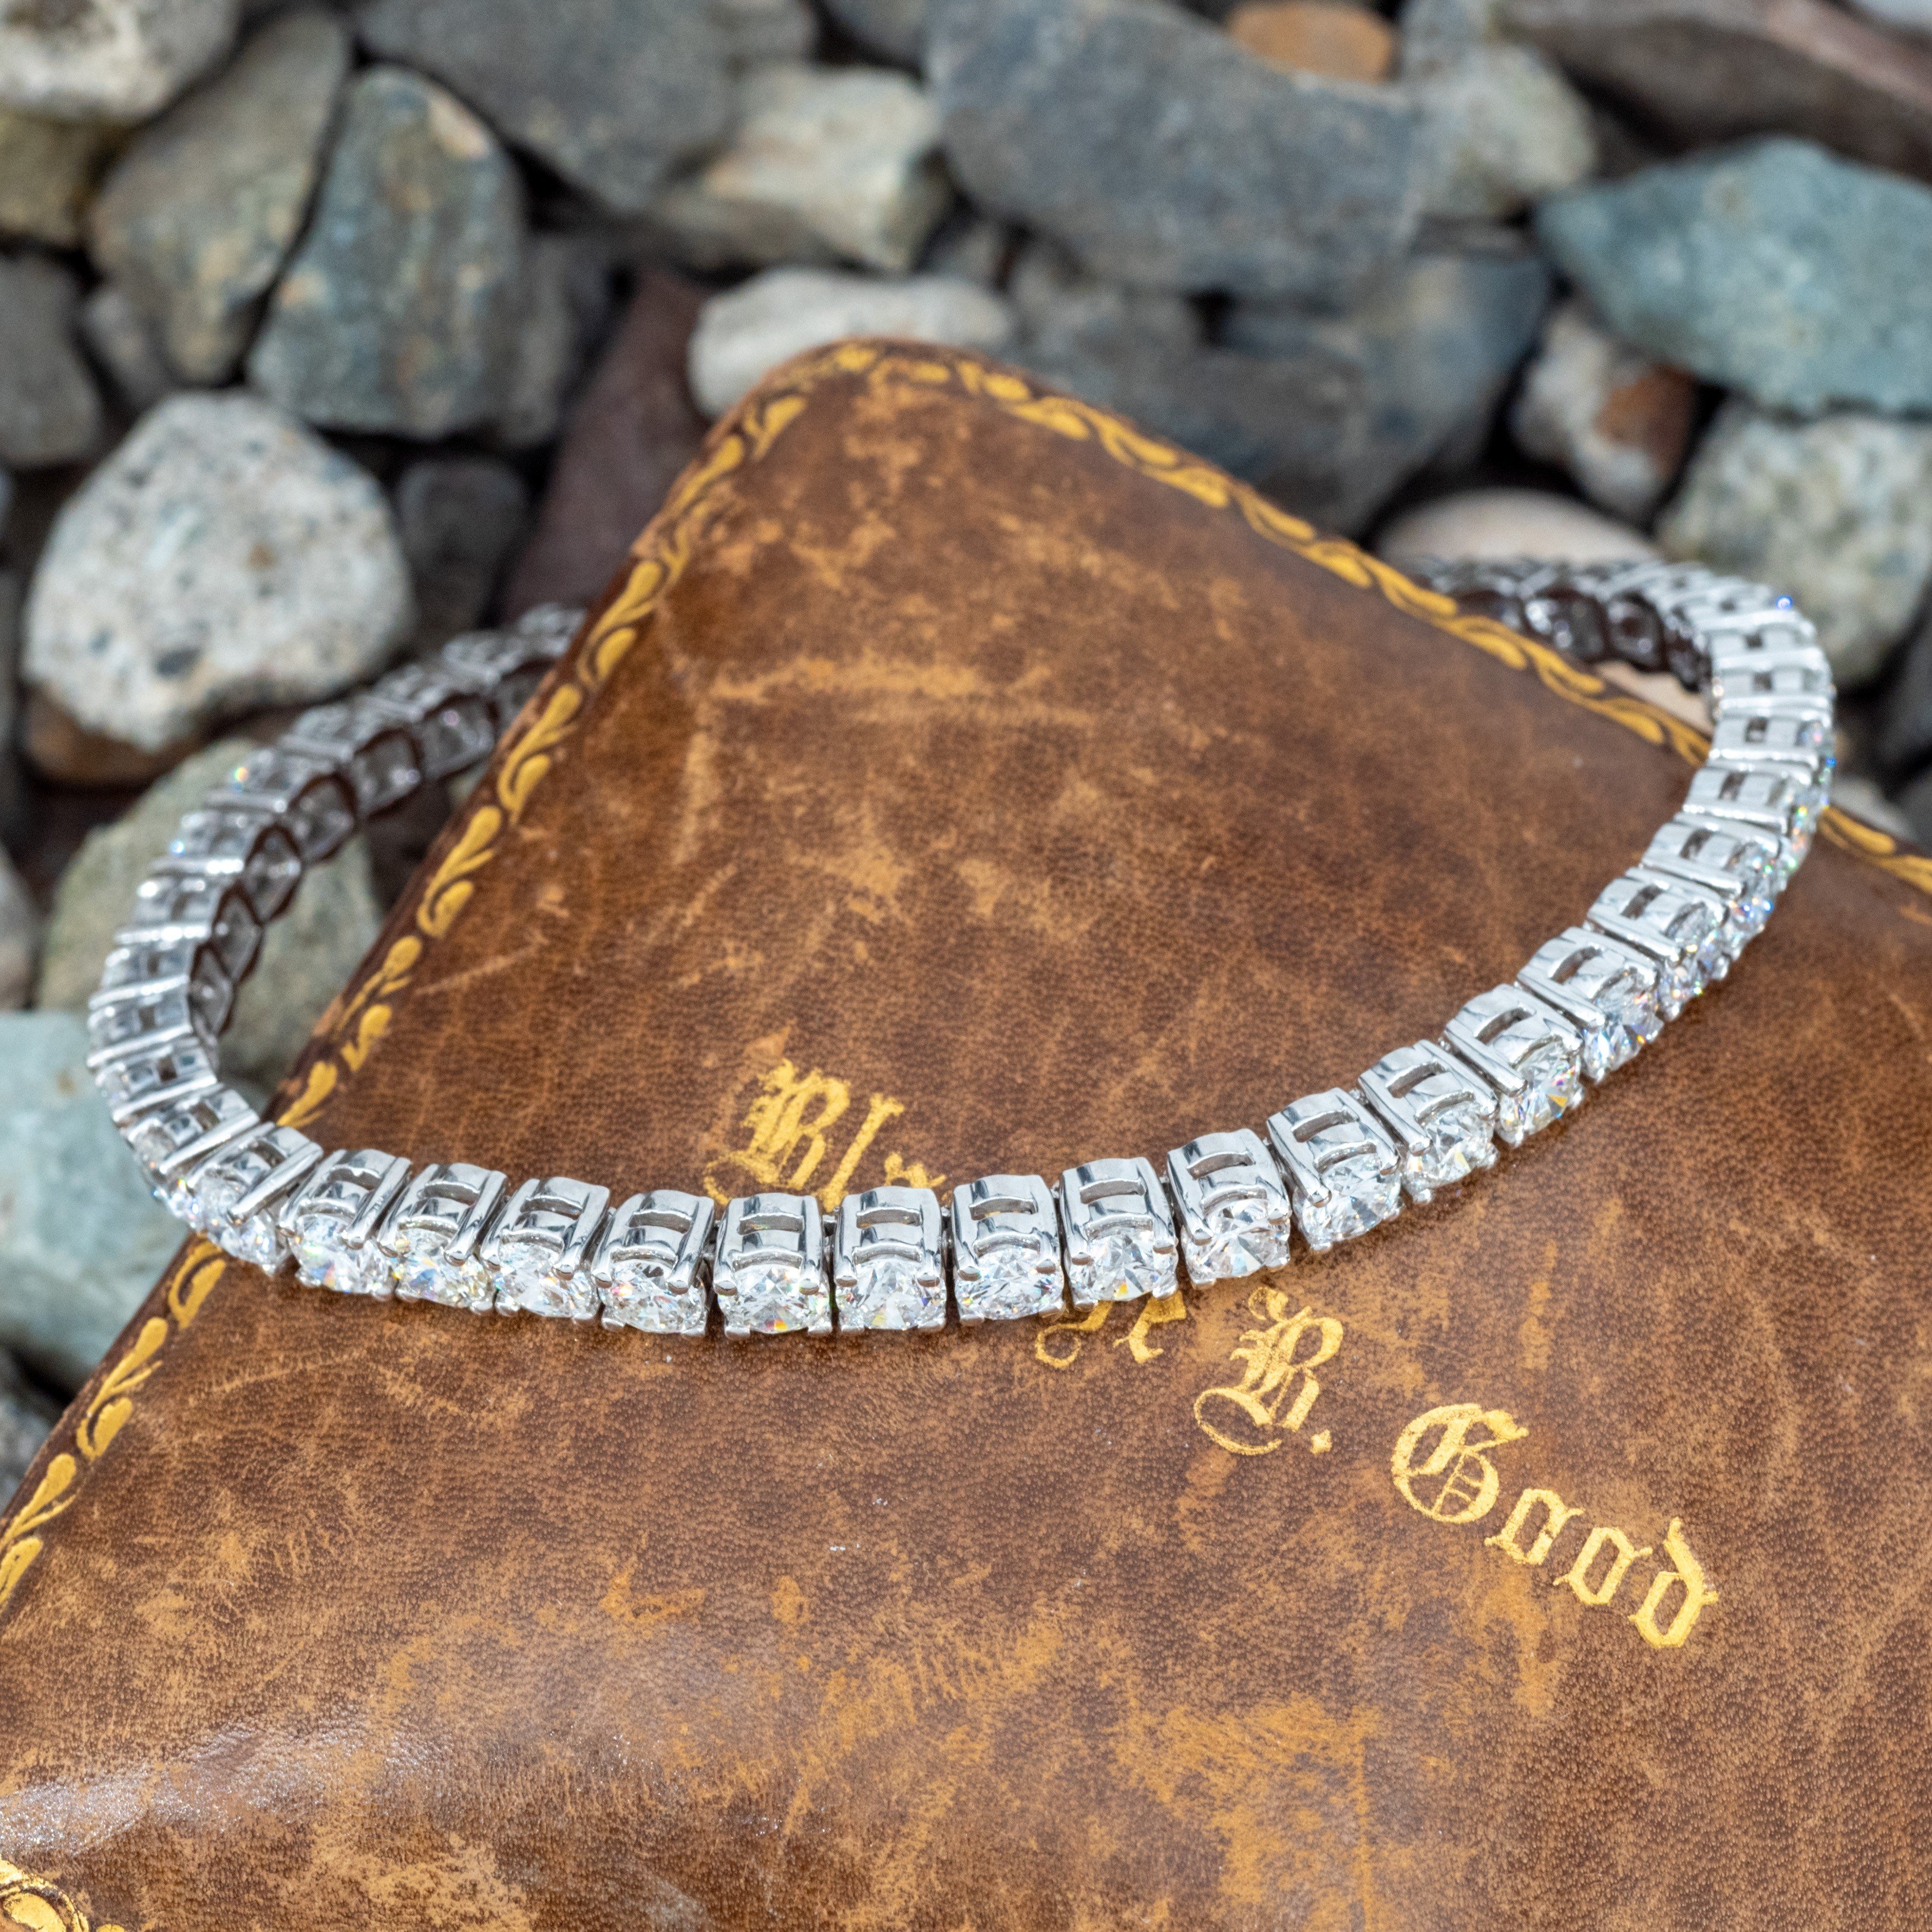 Dainty 2 Diamond Tennis Bracelet – Nicole Rose Fine Jewelry